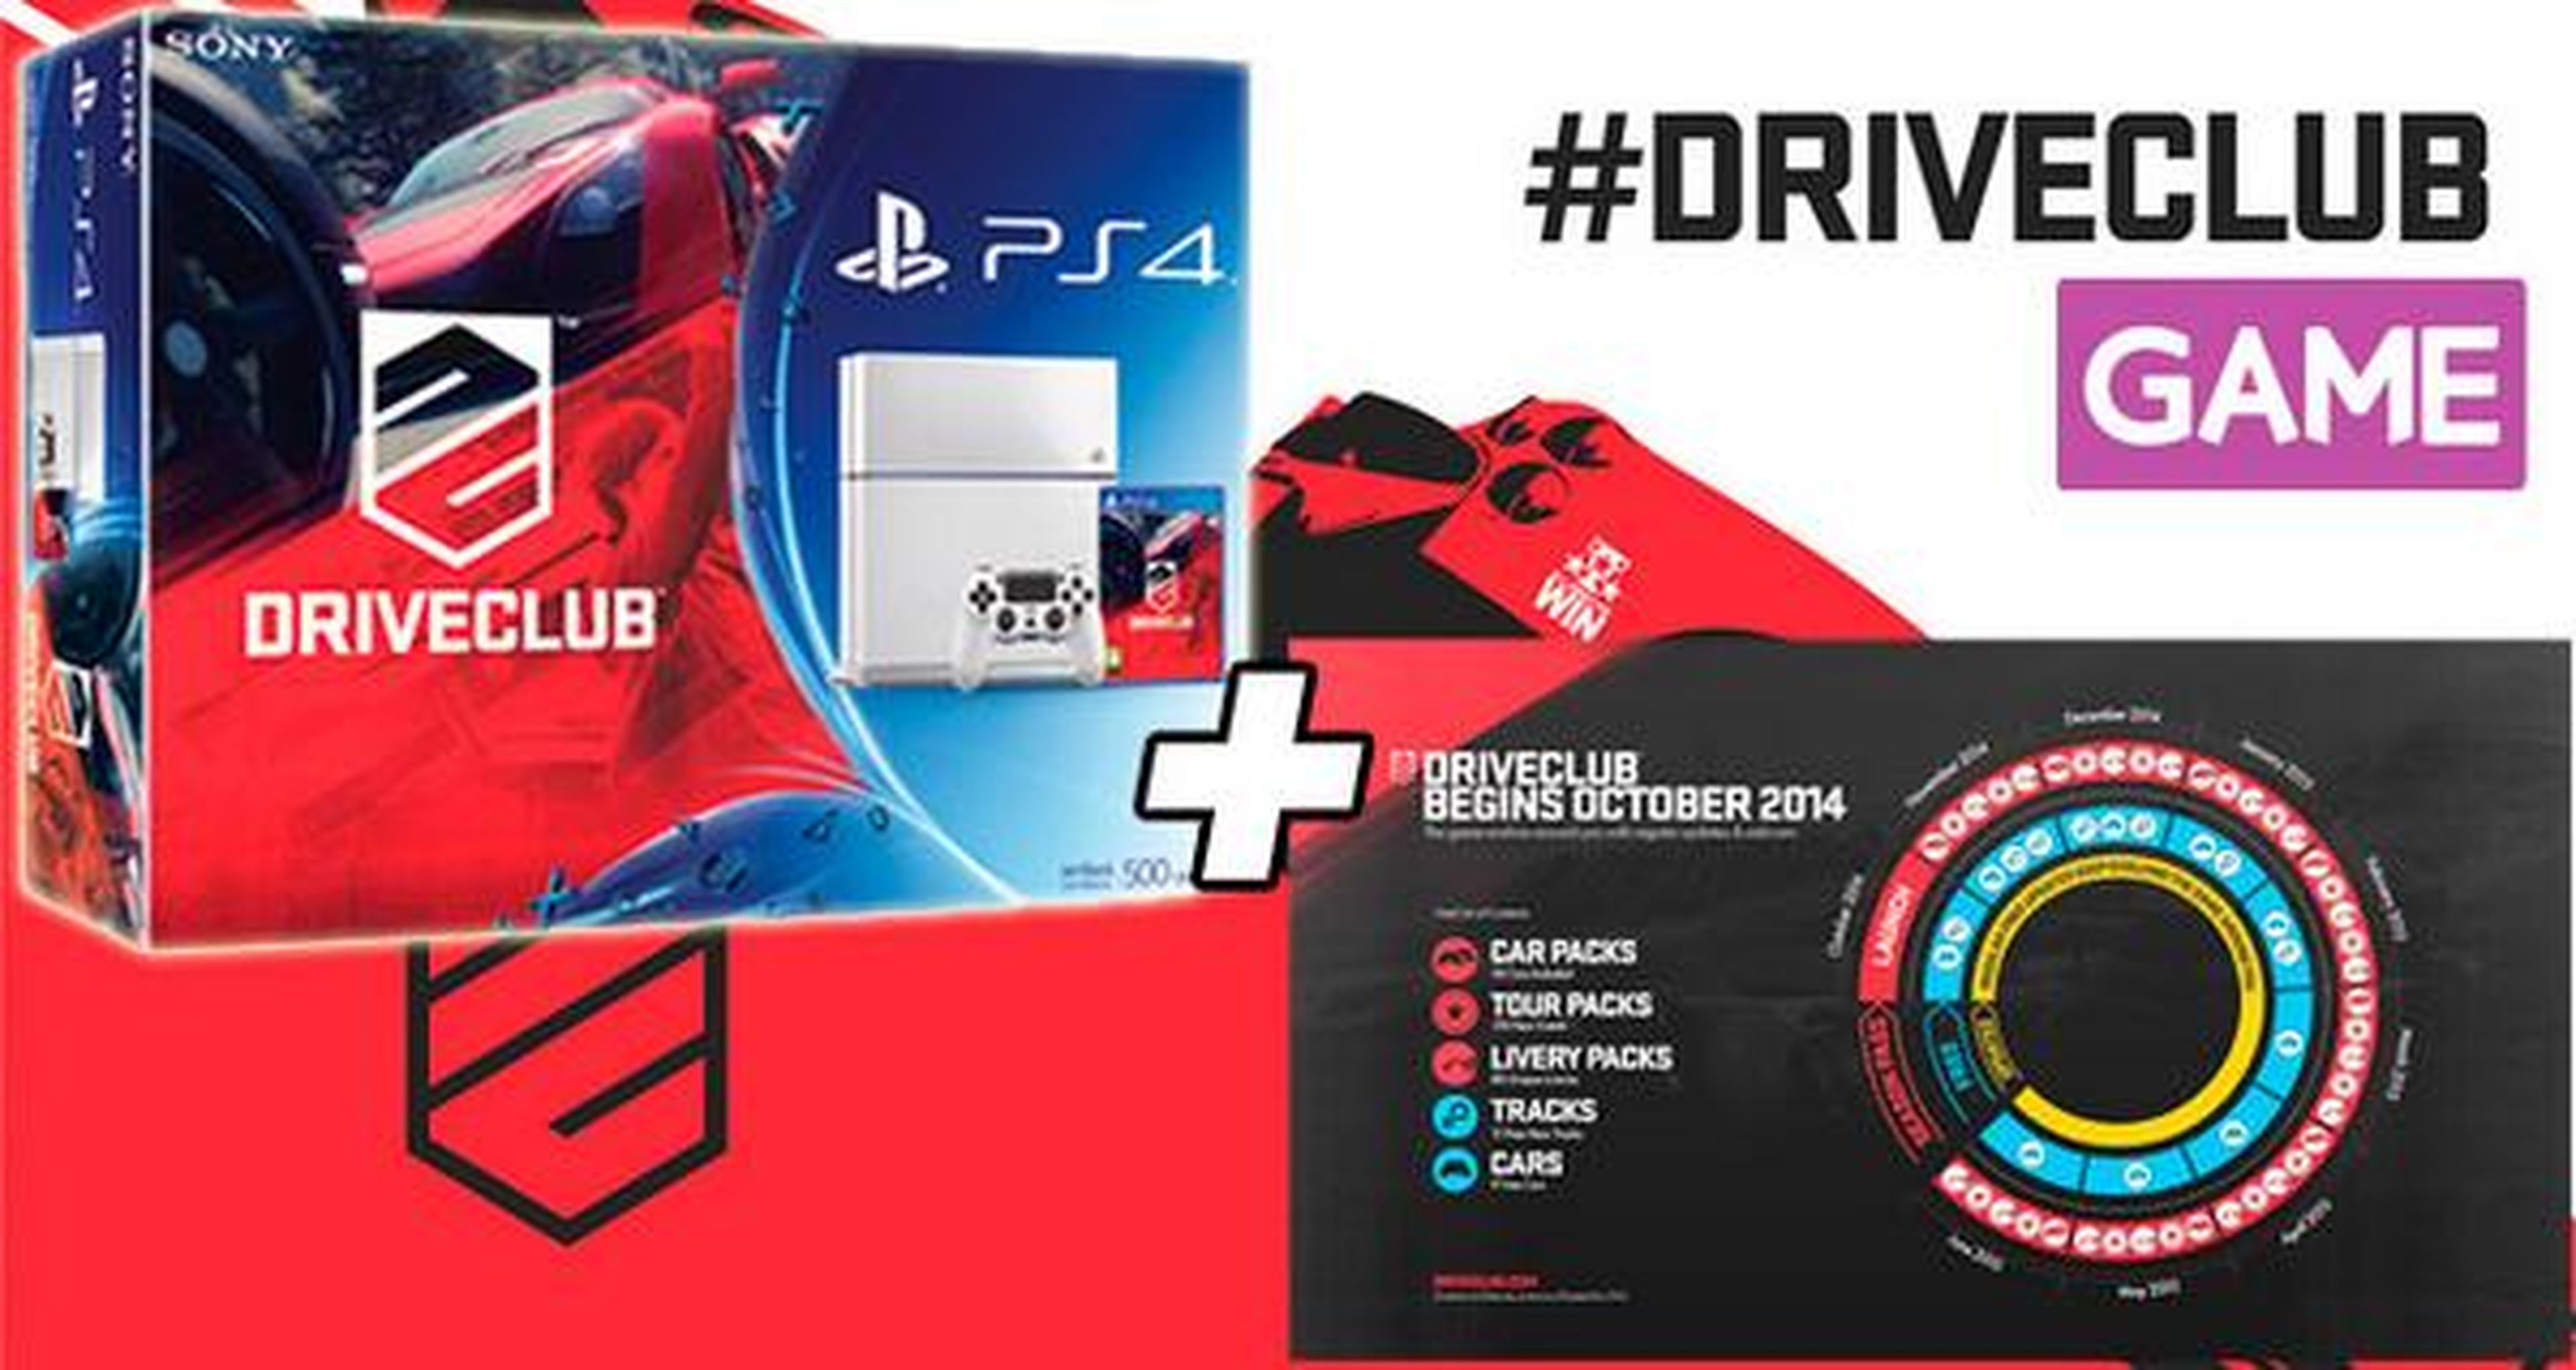 Pack de PlayStation 4 en color blanco con DriveClub exclusivo de Game